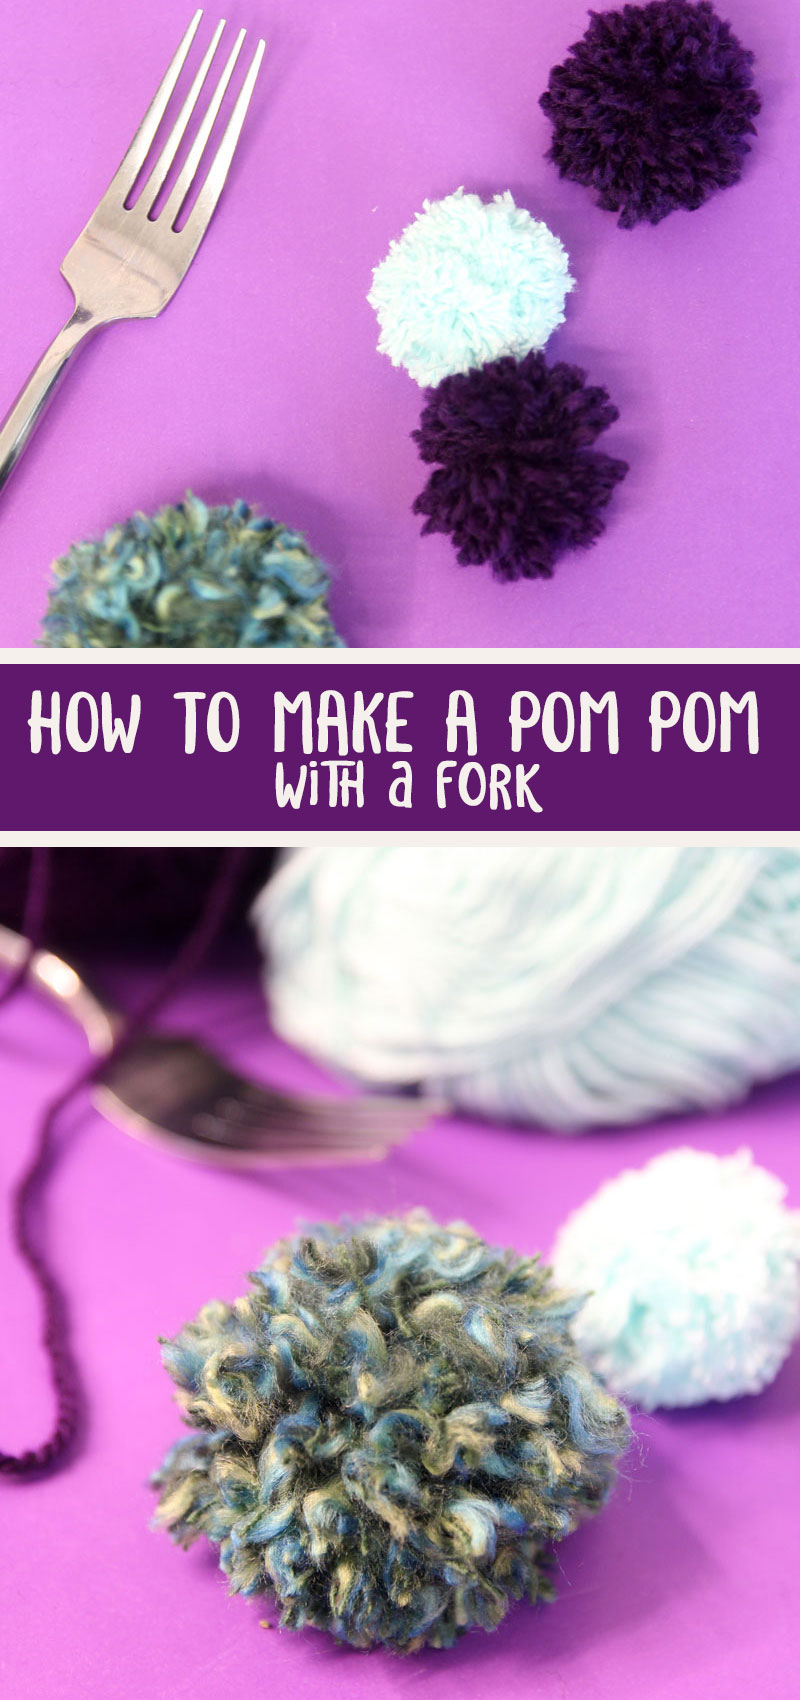 How to make a pom-pom